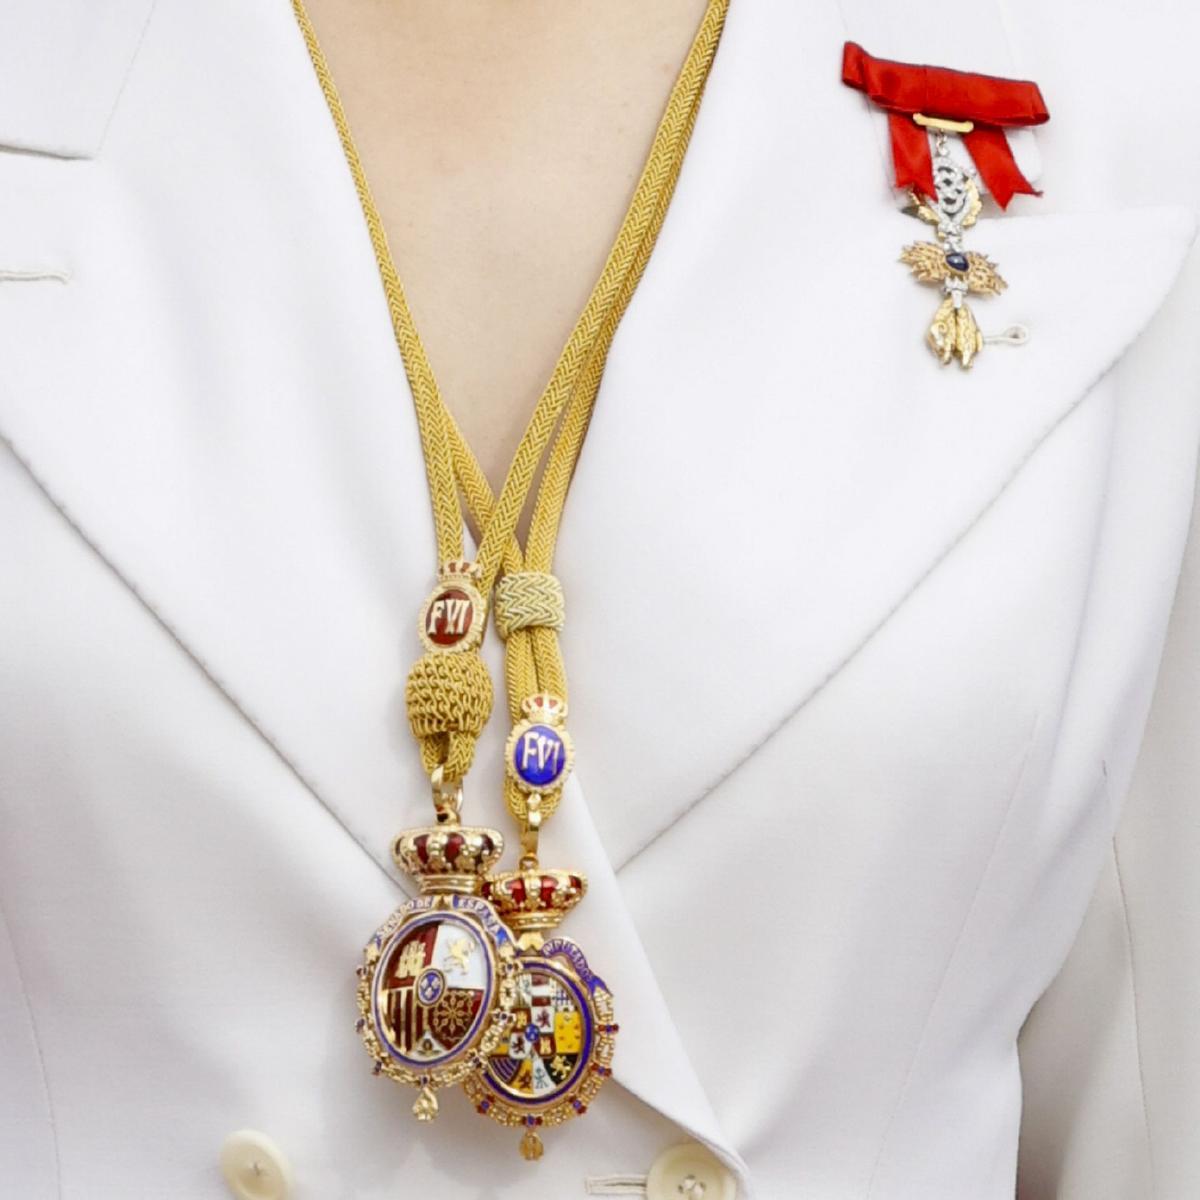 Medallas de Oro de las Cortes Generales de España impuestas a la princesa Leonor